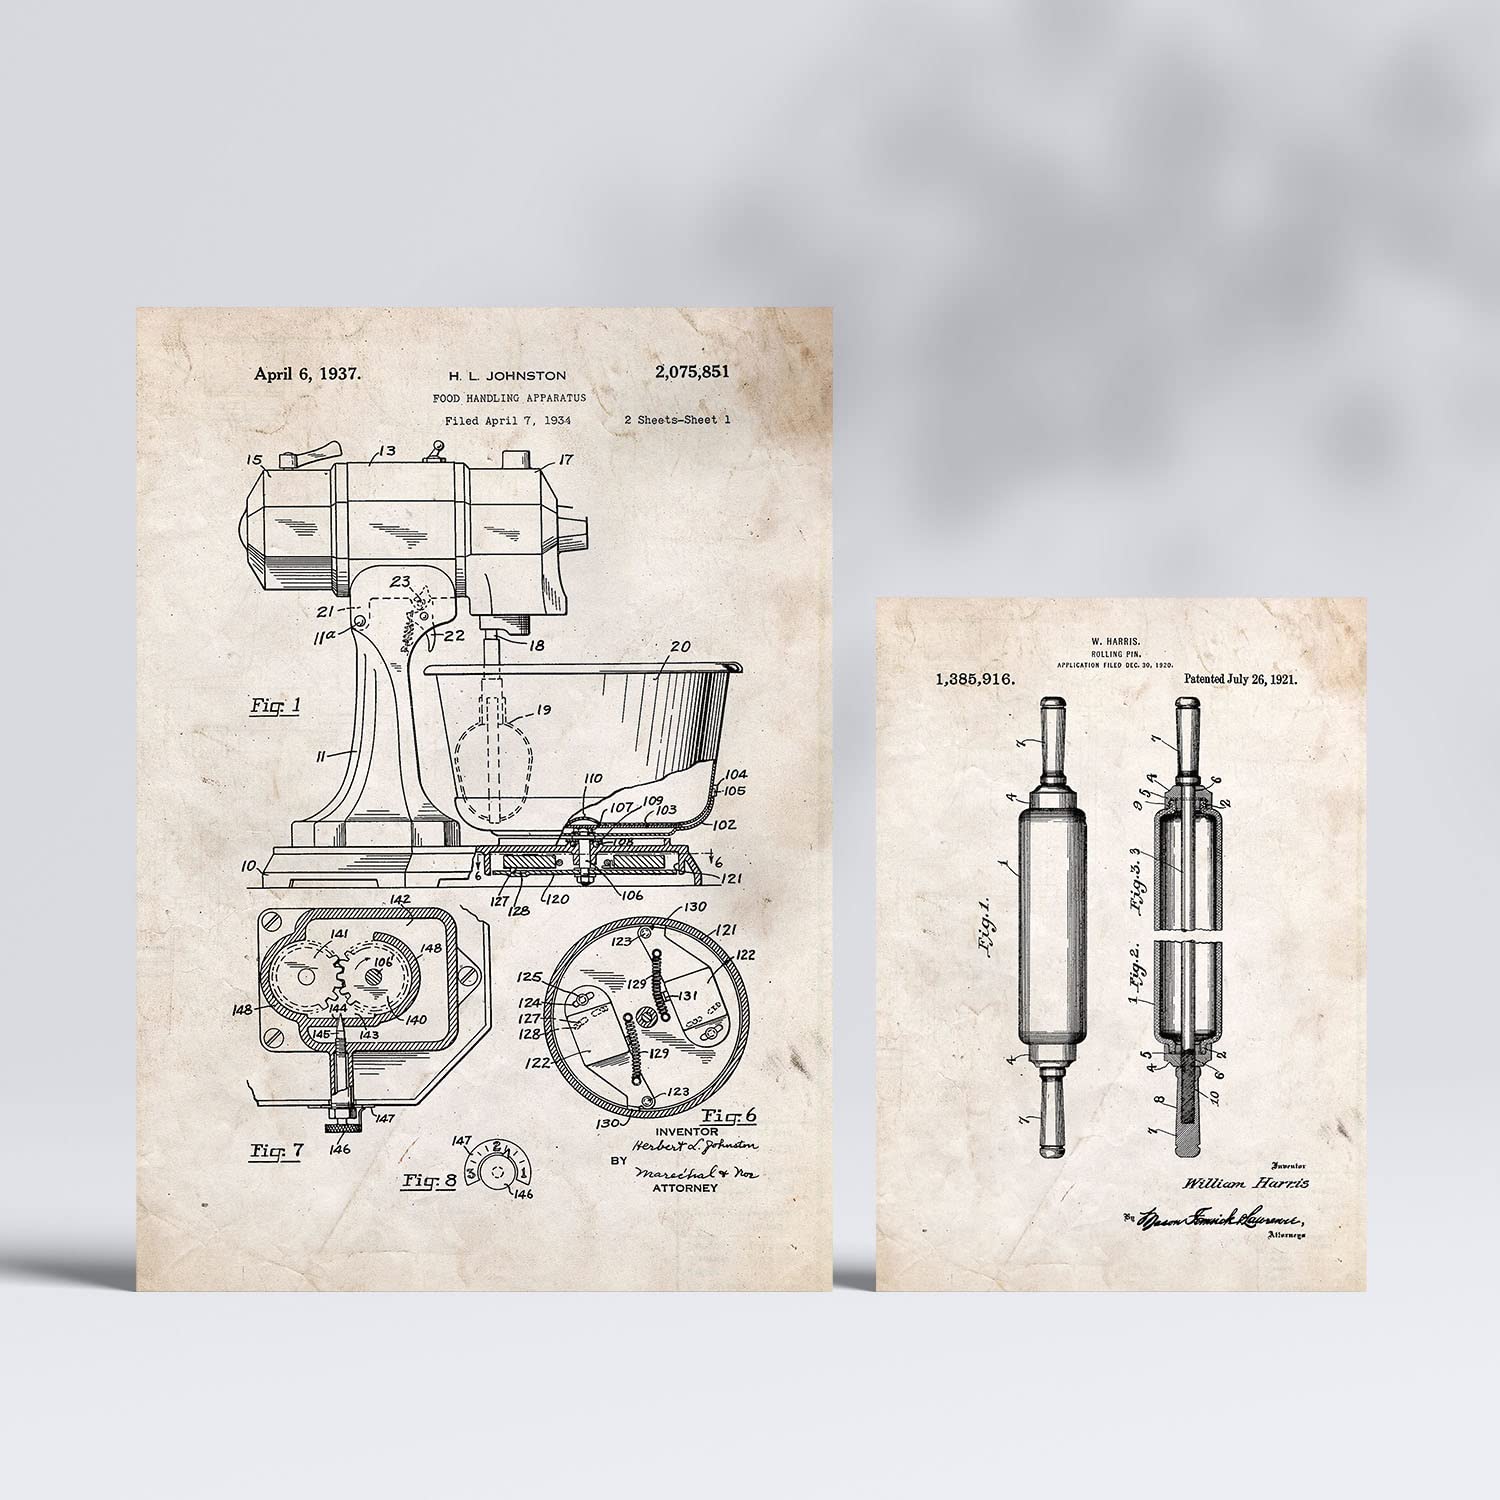 Set de 6 láminas de patentes Herramientas de cocina. Pósters con dibujos retro de inventos antiguos. Tamaños A4 y A3. .-Artwork-Nacnic-Nacnic Estudio SL